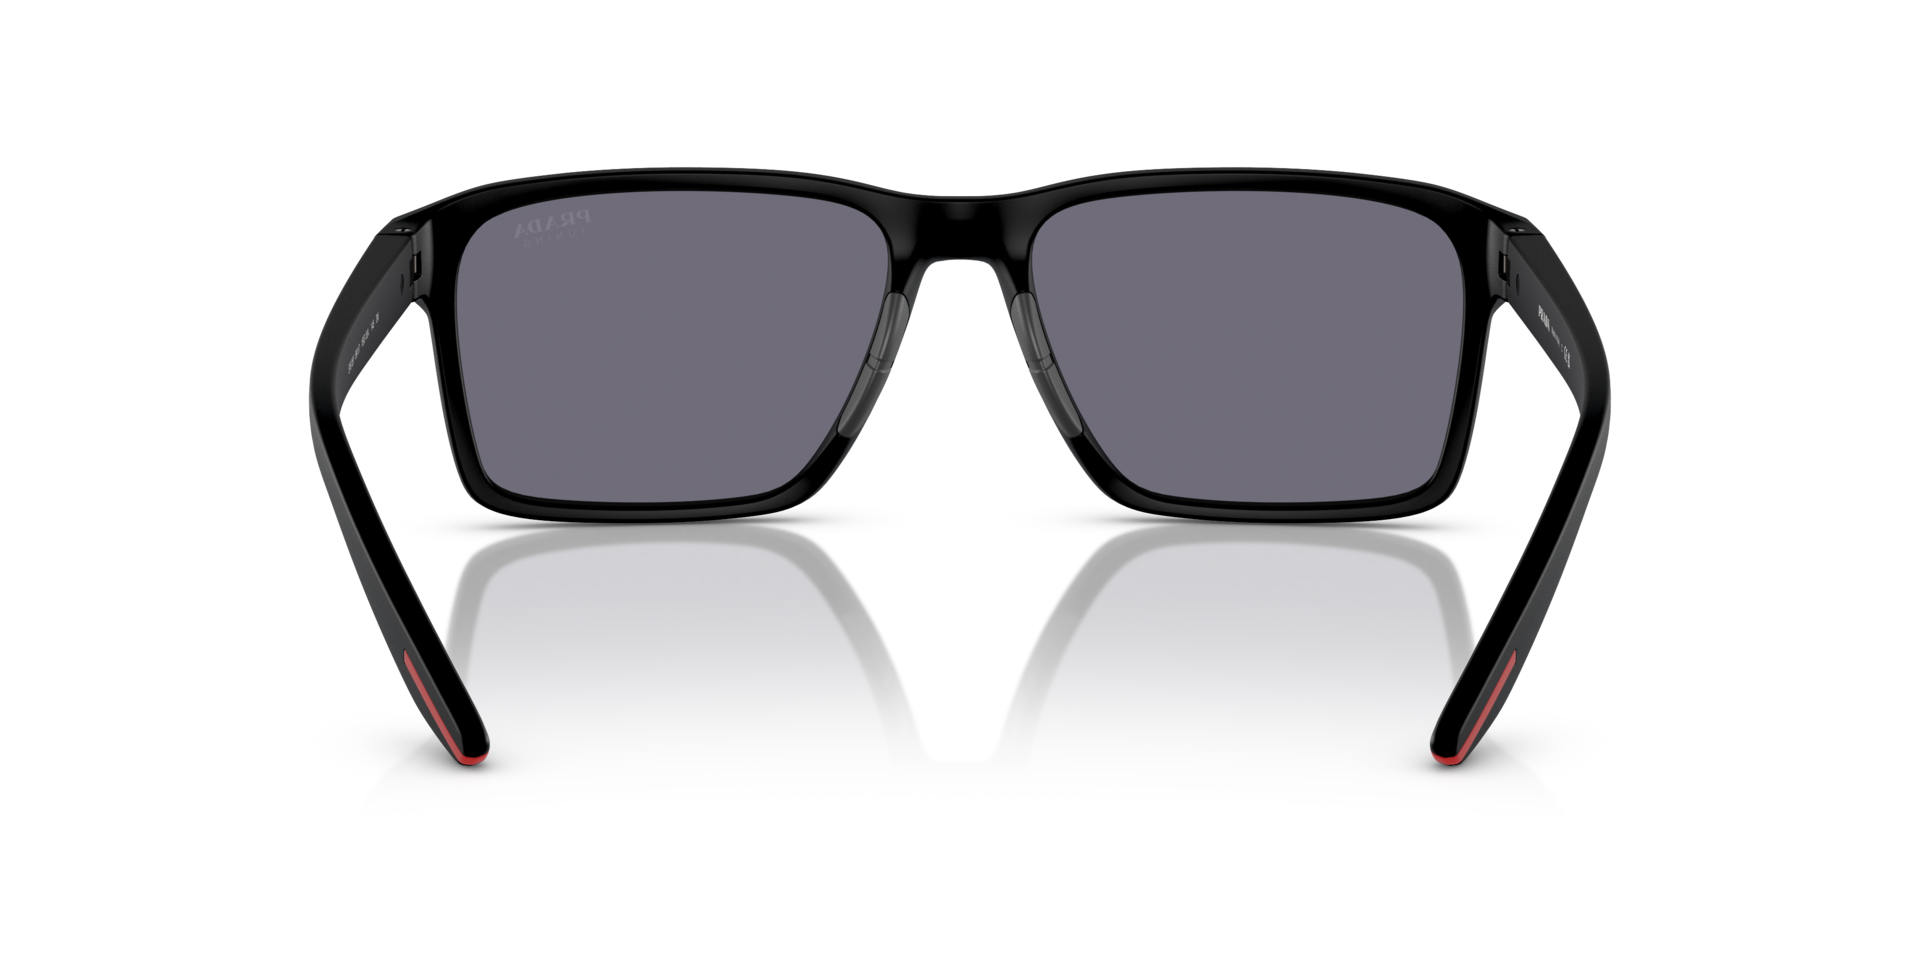 Das Bild zeigt die Sonnenbrille PS05YS 1BO10A von der Marke Prada Linea Rossa in schwarz.